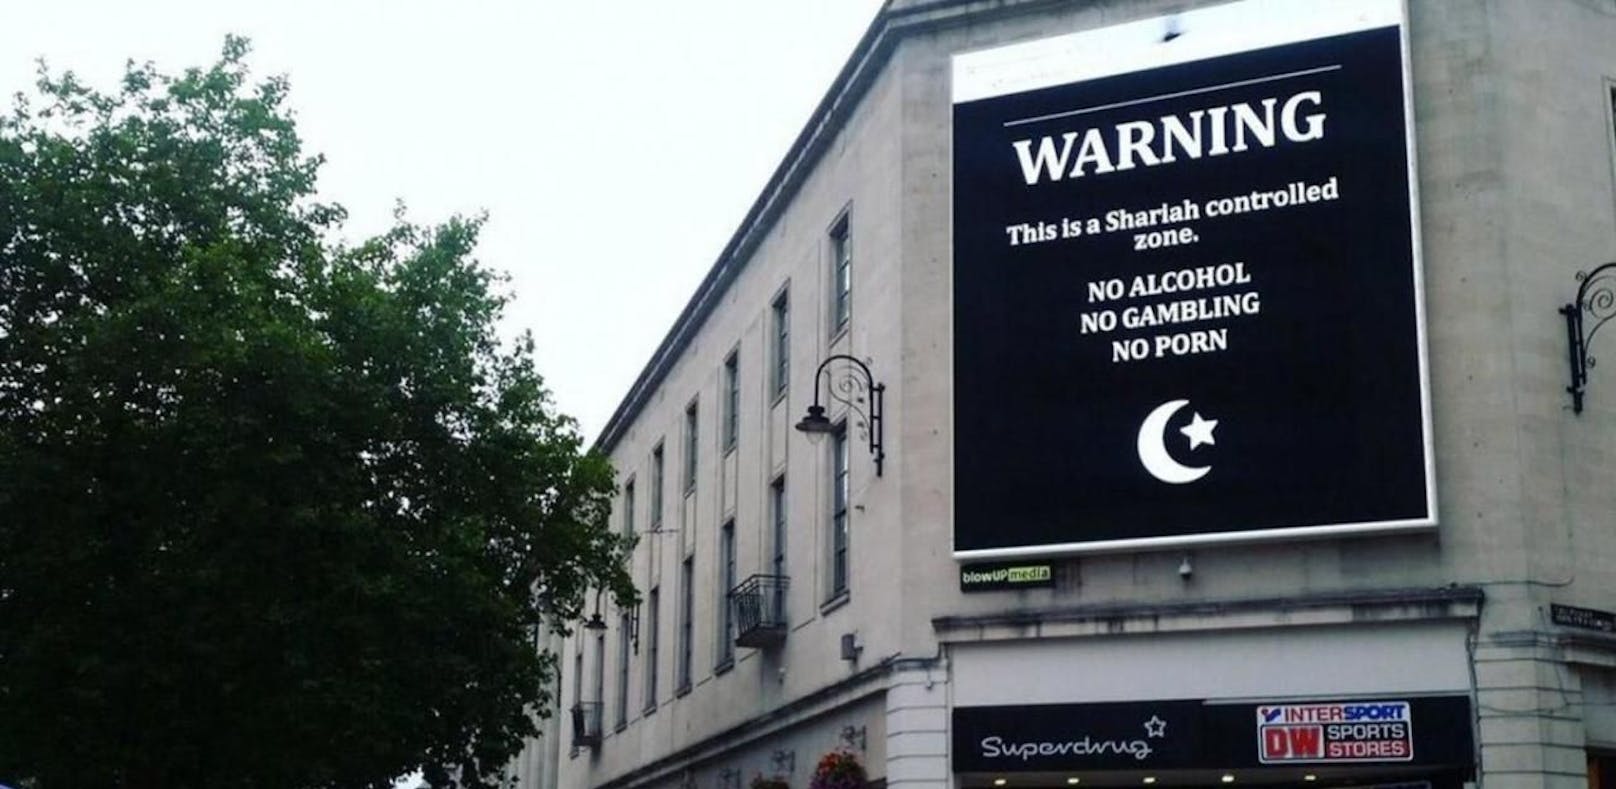 Mitten in Stadt: Werbetafel warnt vor "Scharia-Zone"